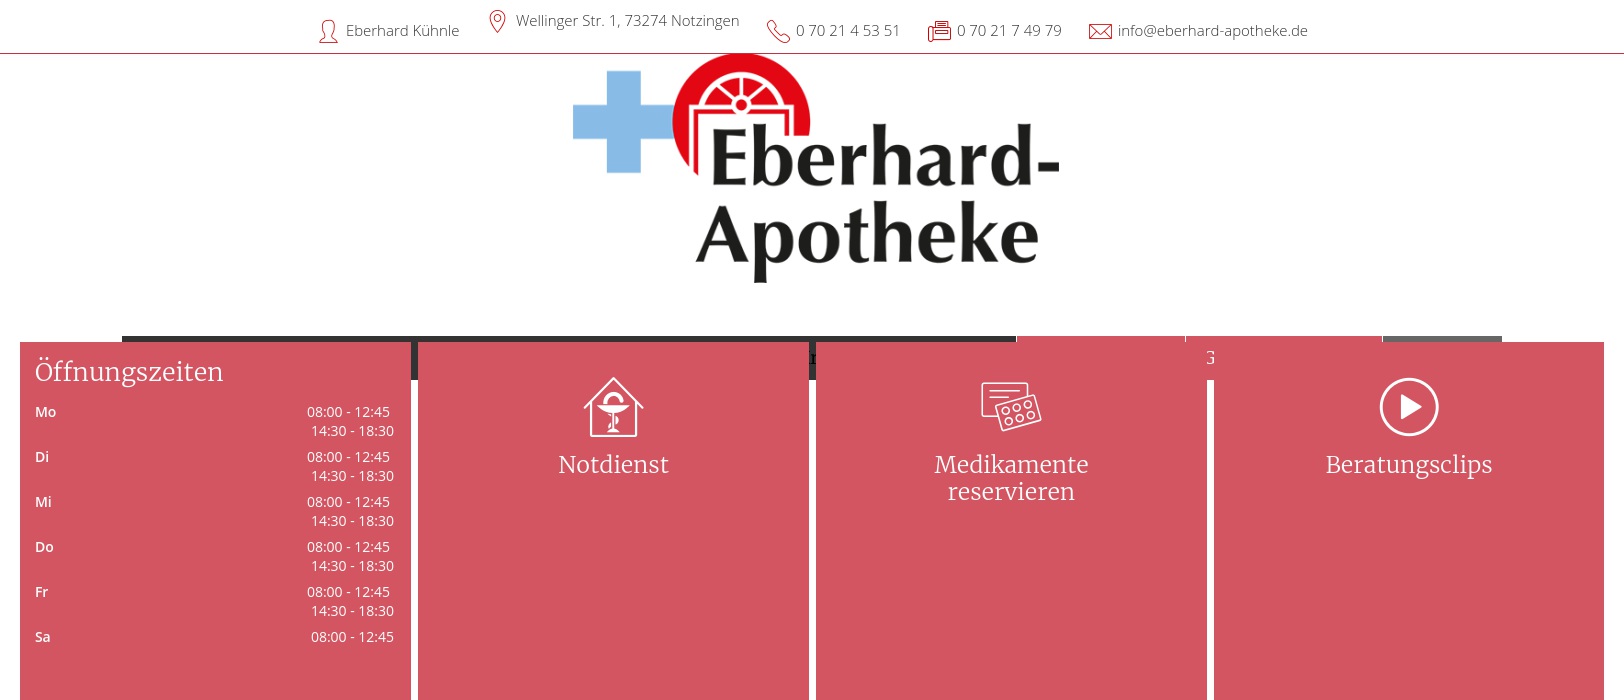 Eberhard-Apotheke